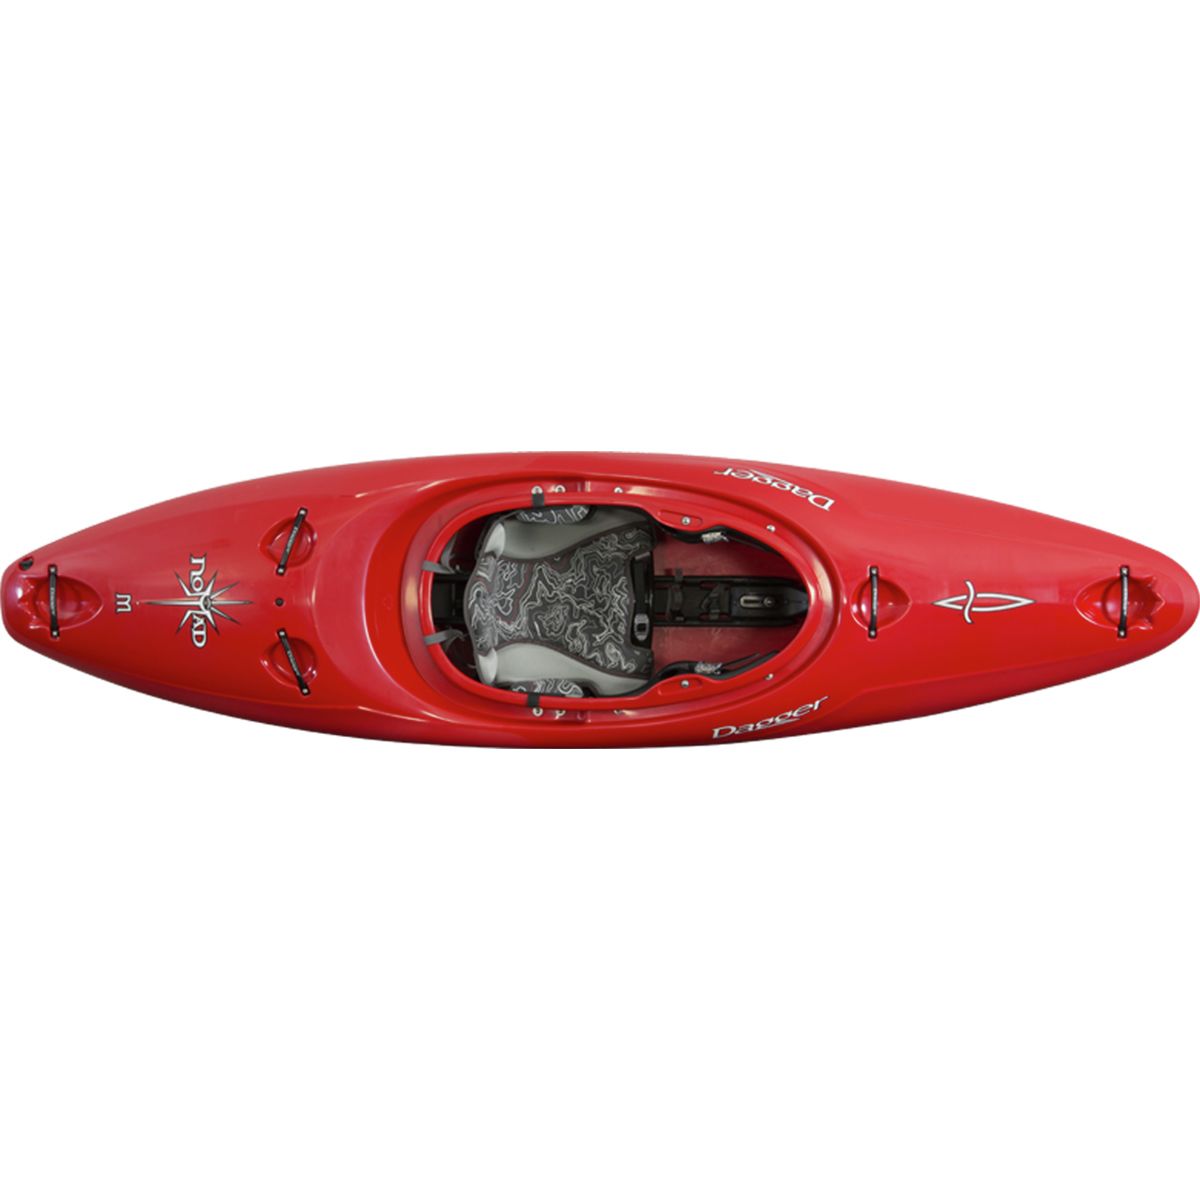 Color:Red:Dagger Nomad 8.6 Kayak